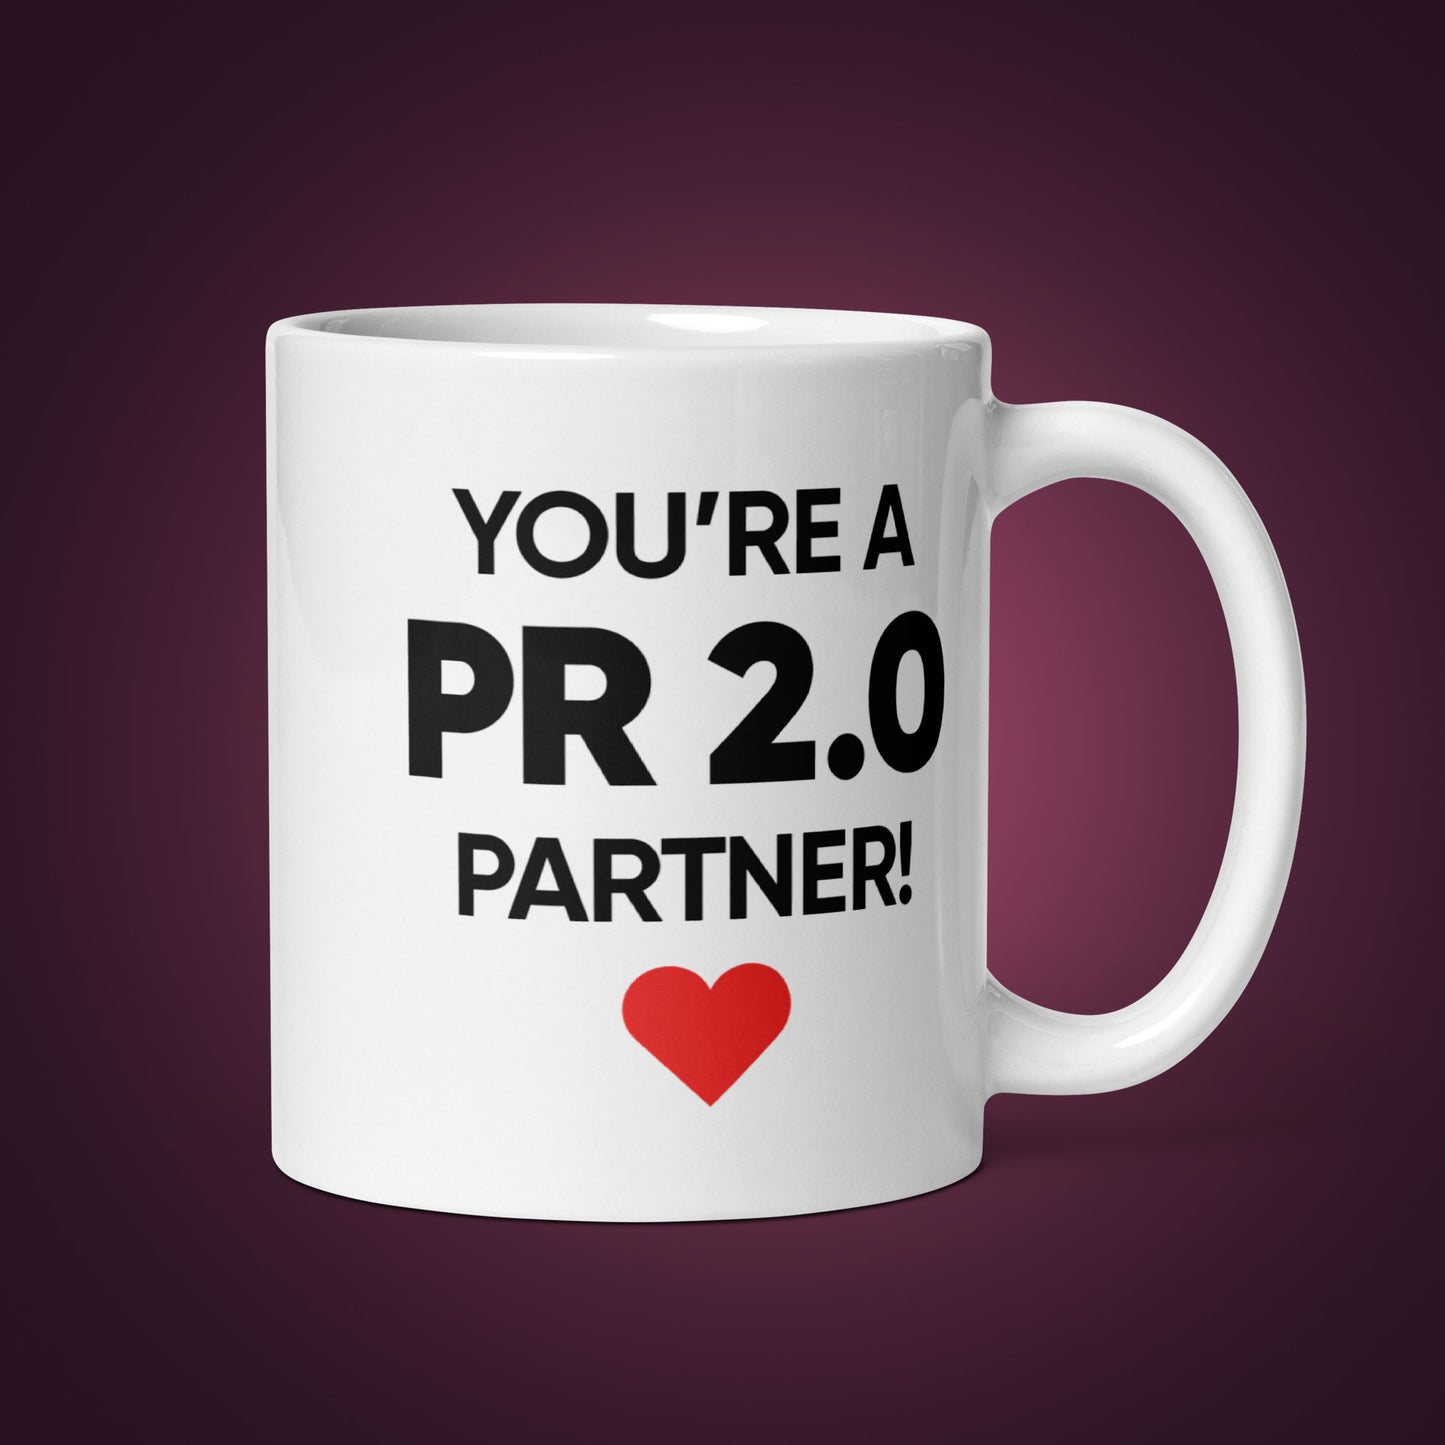 Tasse mit der Aufschrift „Sie sind ein PR 2.0-Partner“.